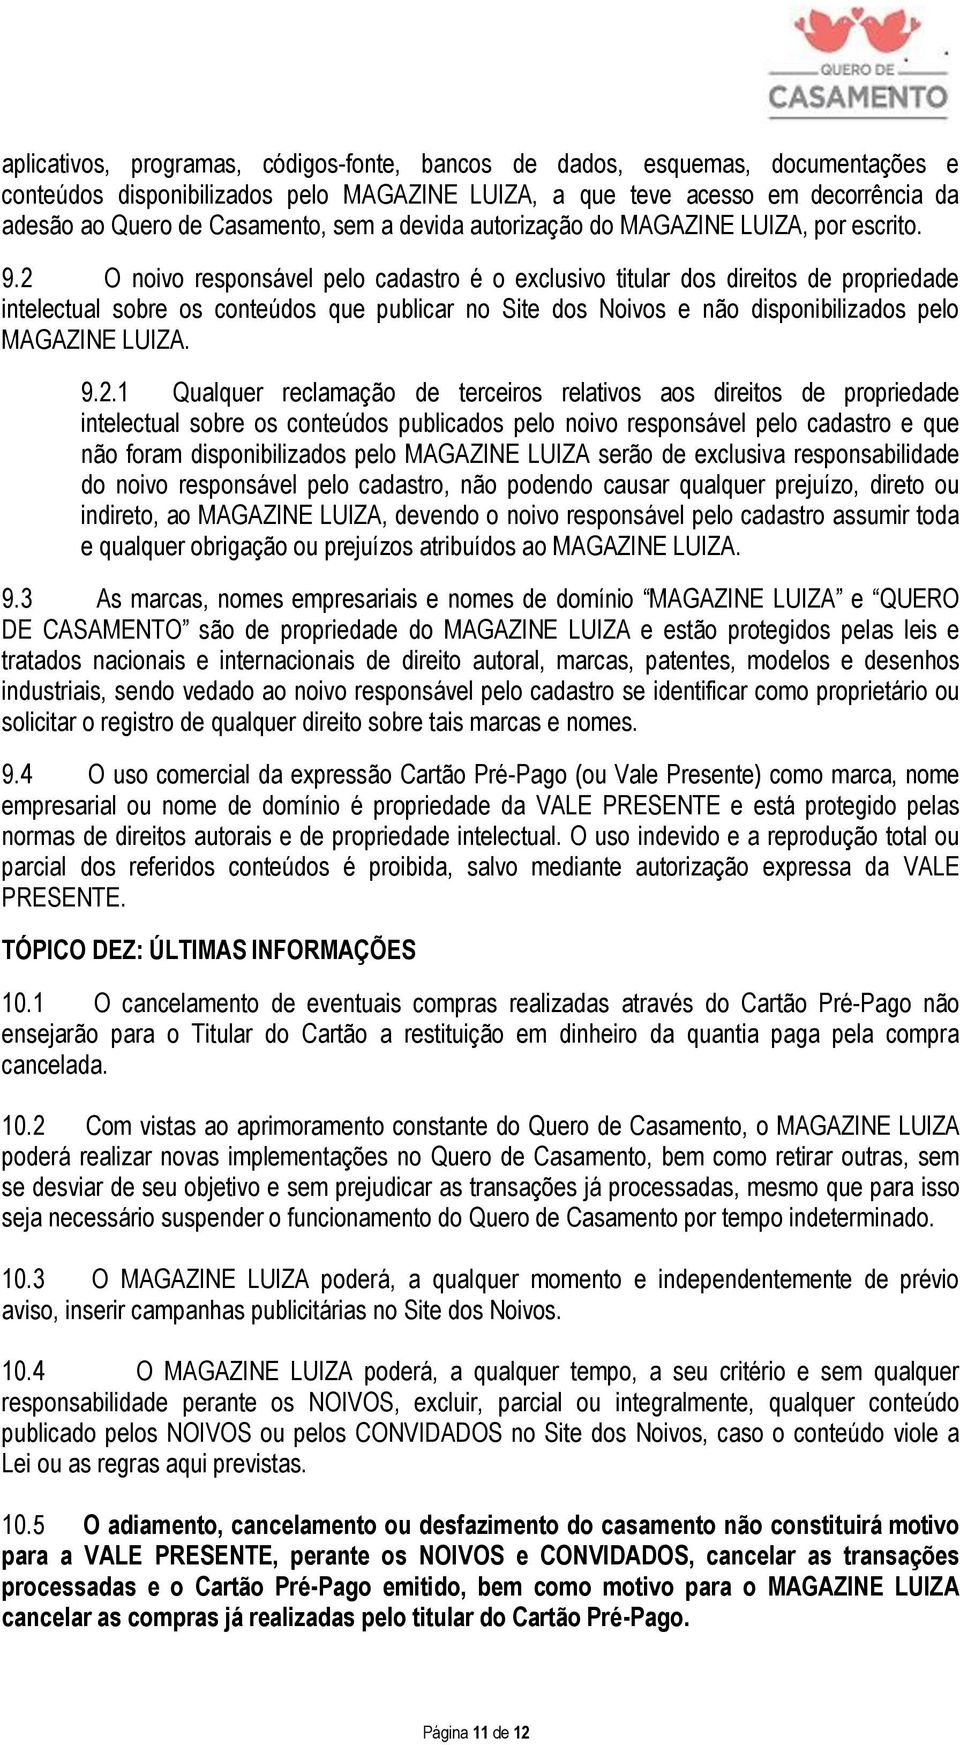 QUERO DE CASAMENTO REGULAMENTO - PDF Free Download